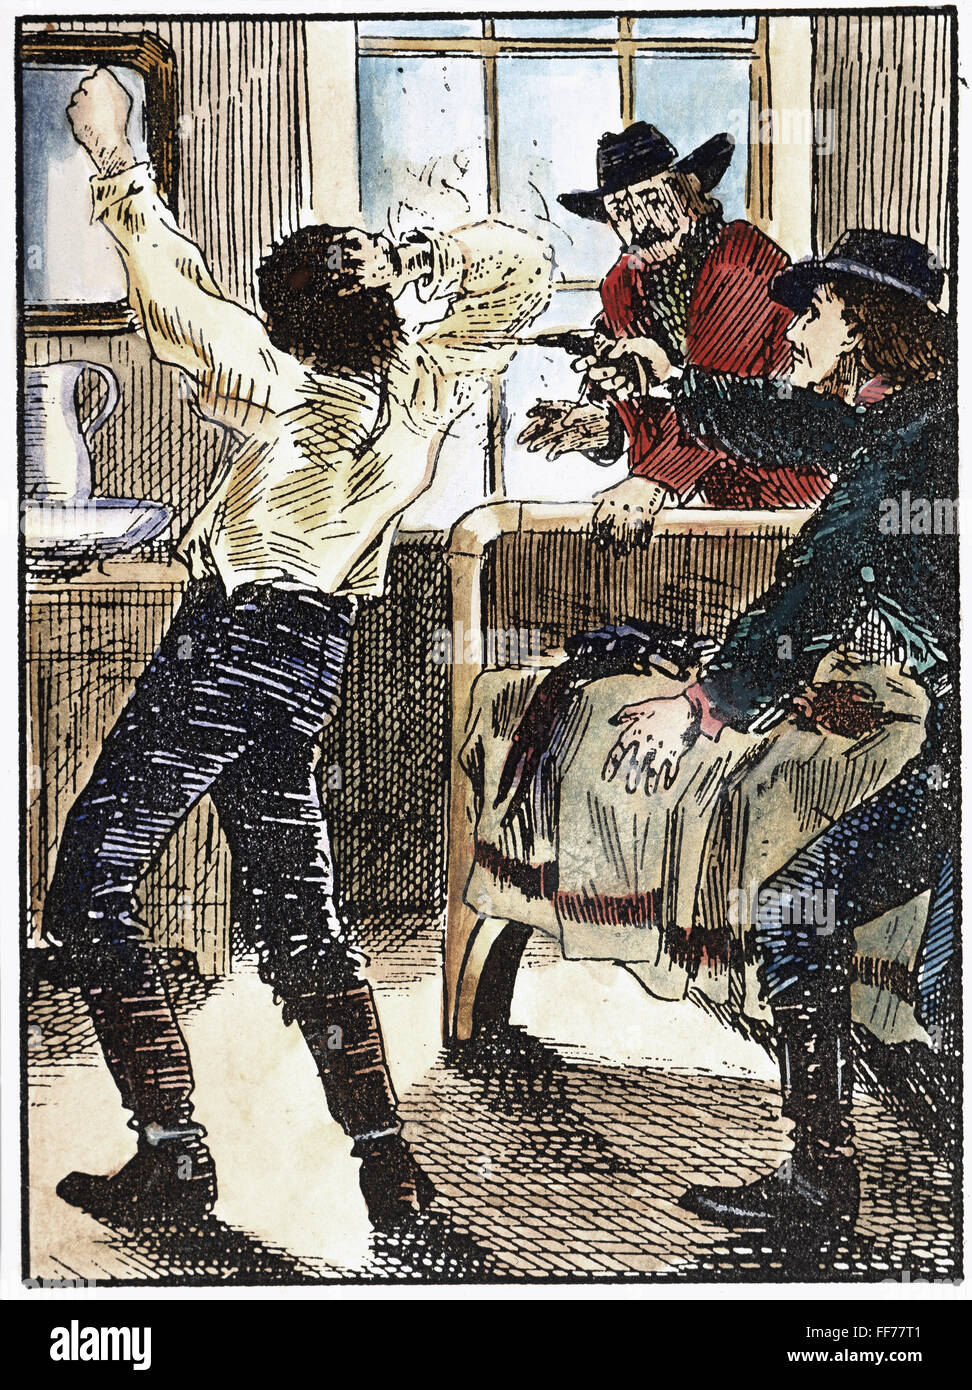 El asesinato de Jesse James, 1882. /Nel proscribir el asesinato de Jesse James en su casa de Saint Joseph, Missouri, por Robert Ford el 3 de abril de 1882. Dibujo contemporáneo. Foto de stock